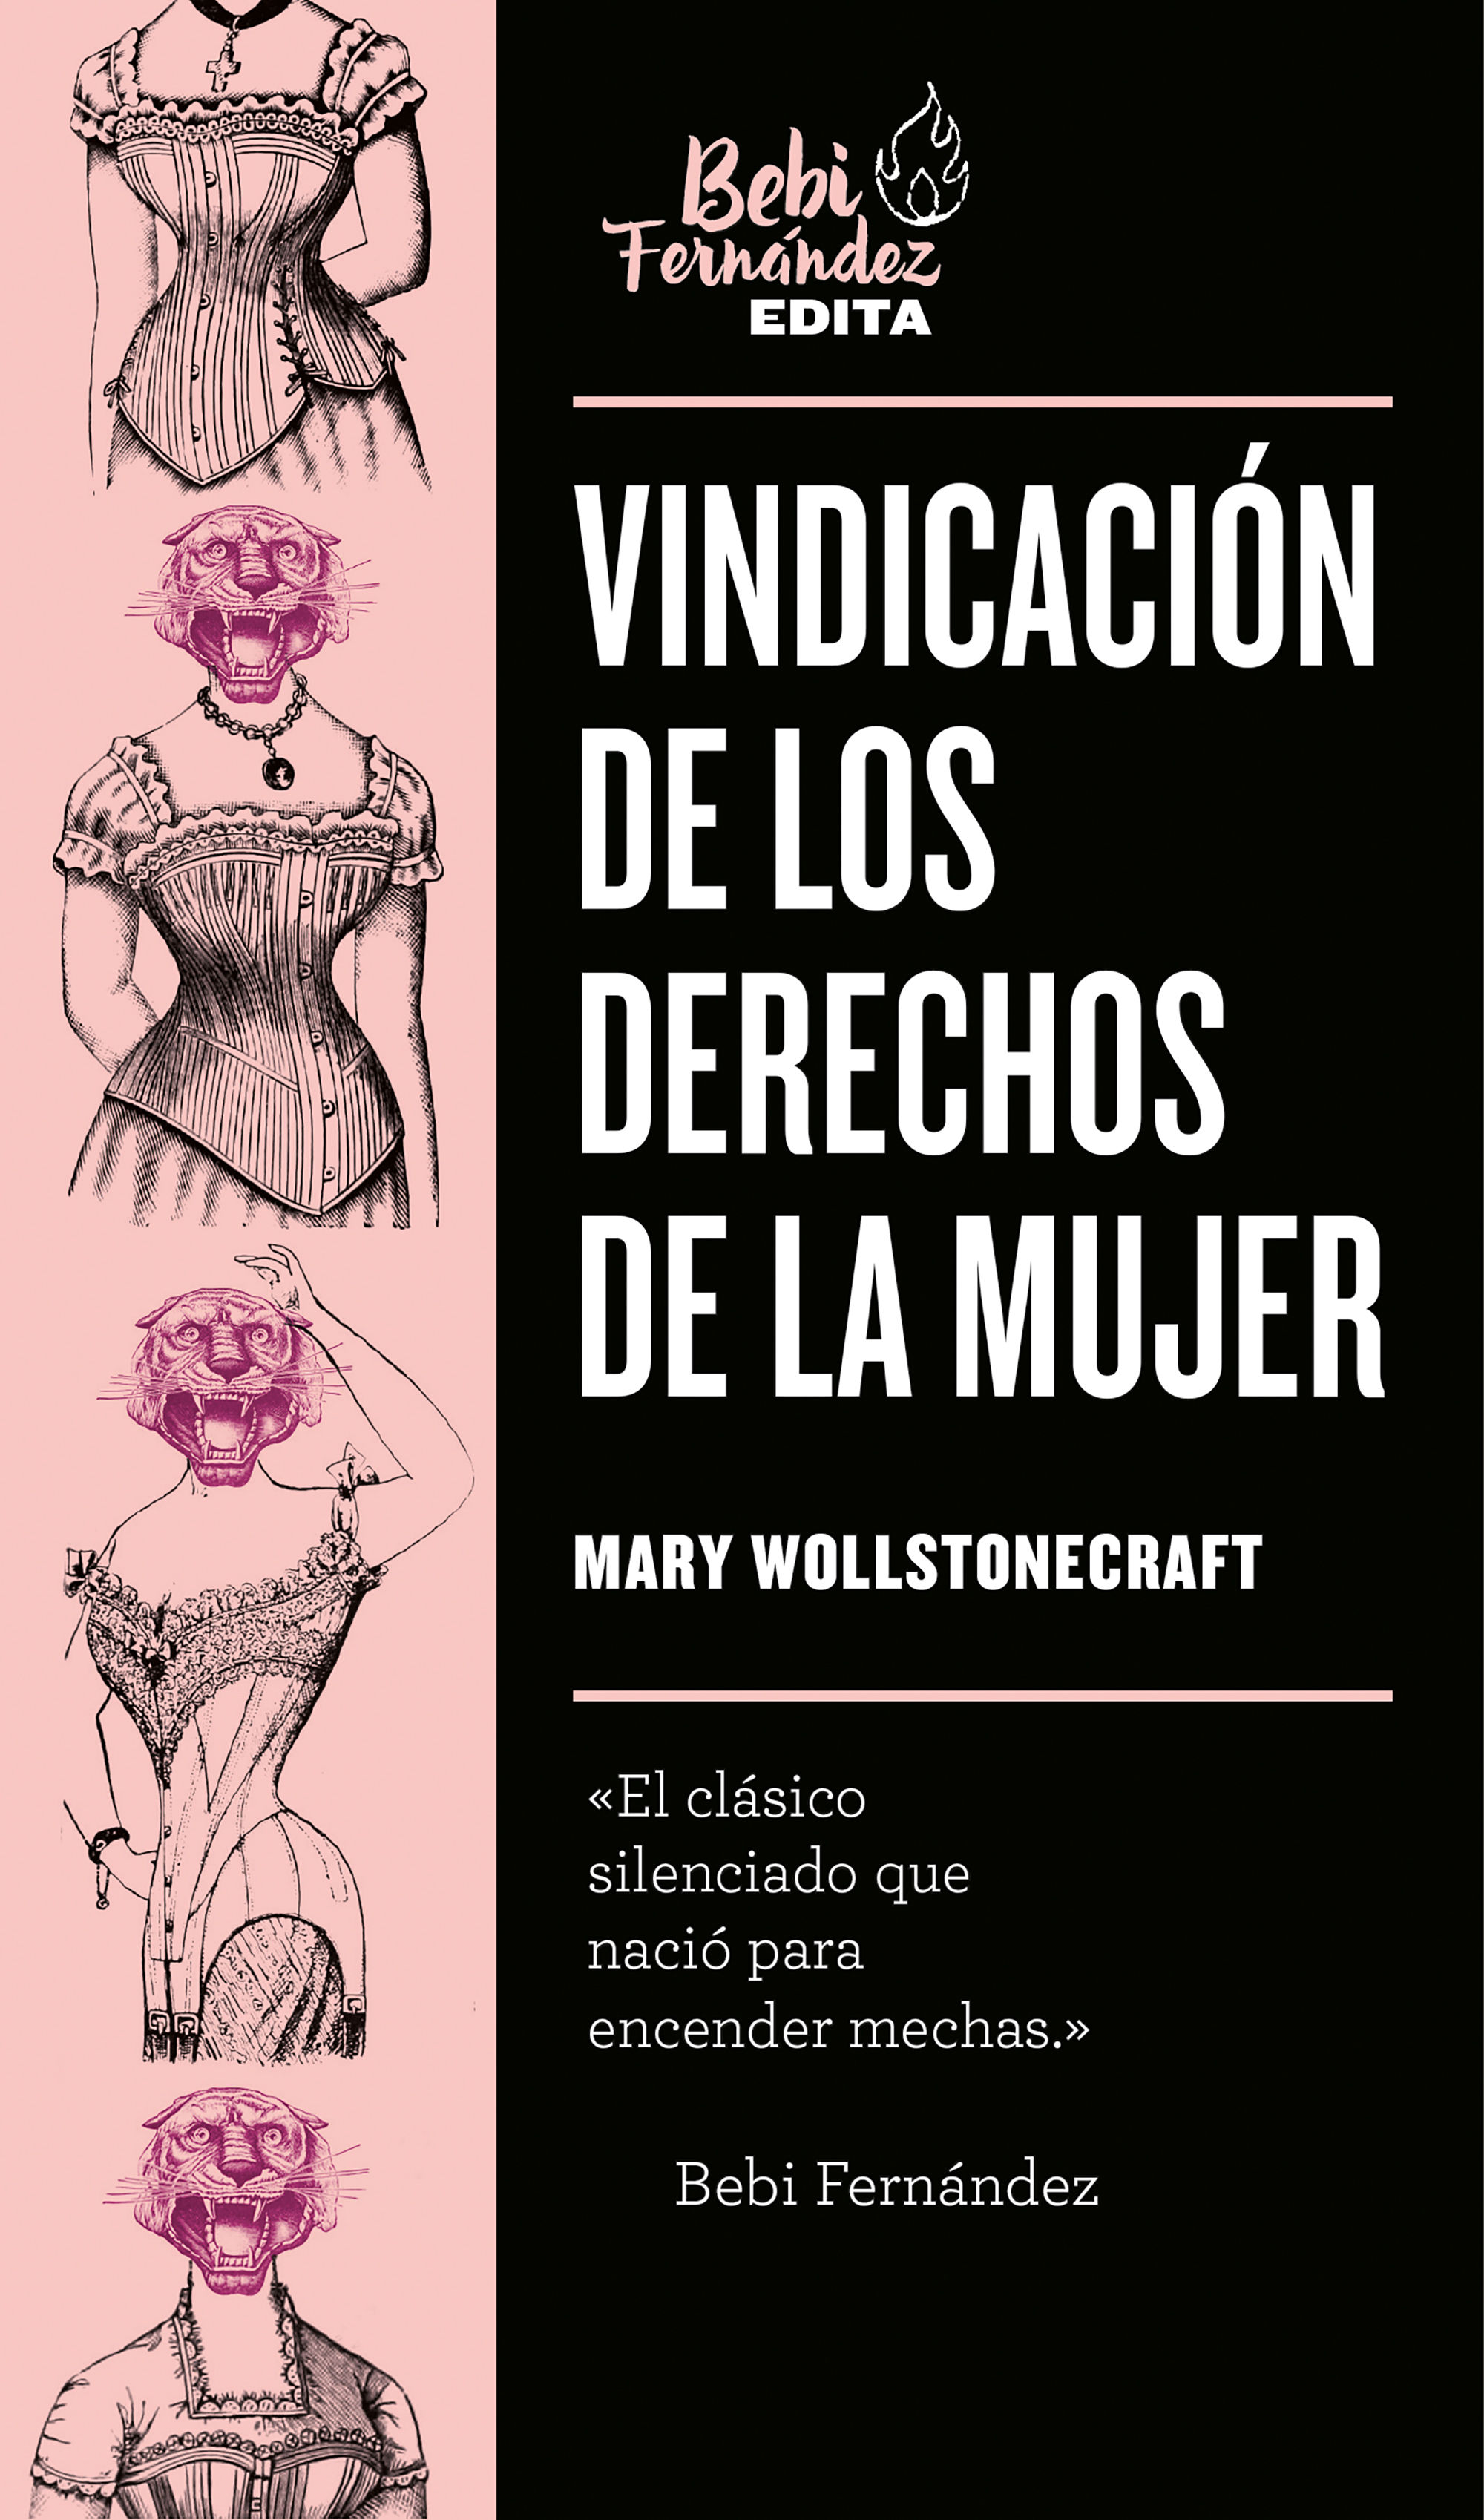 Imagen de portada del libro Vindicación de los derechos de la mujer